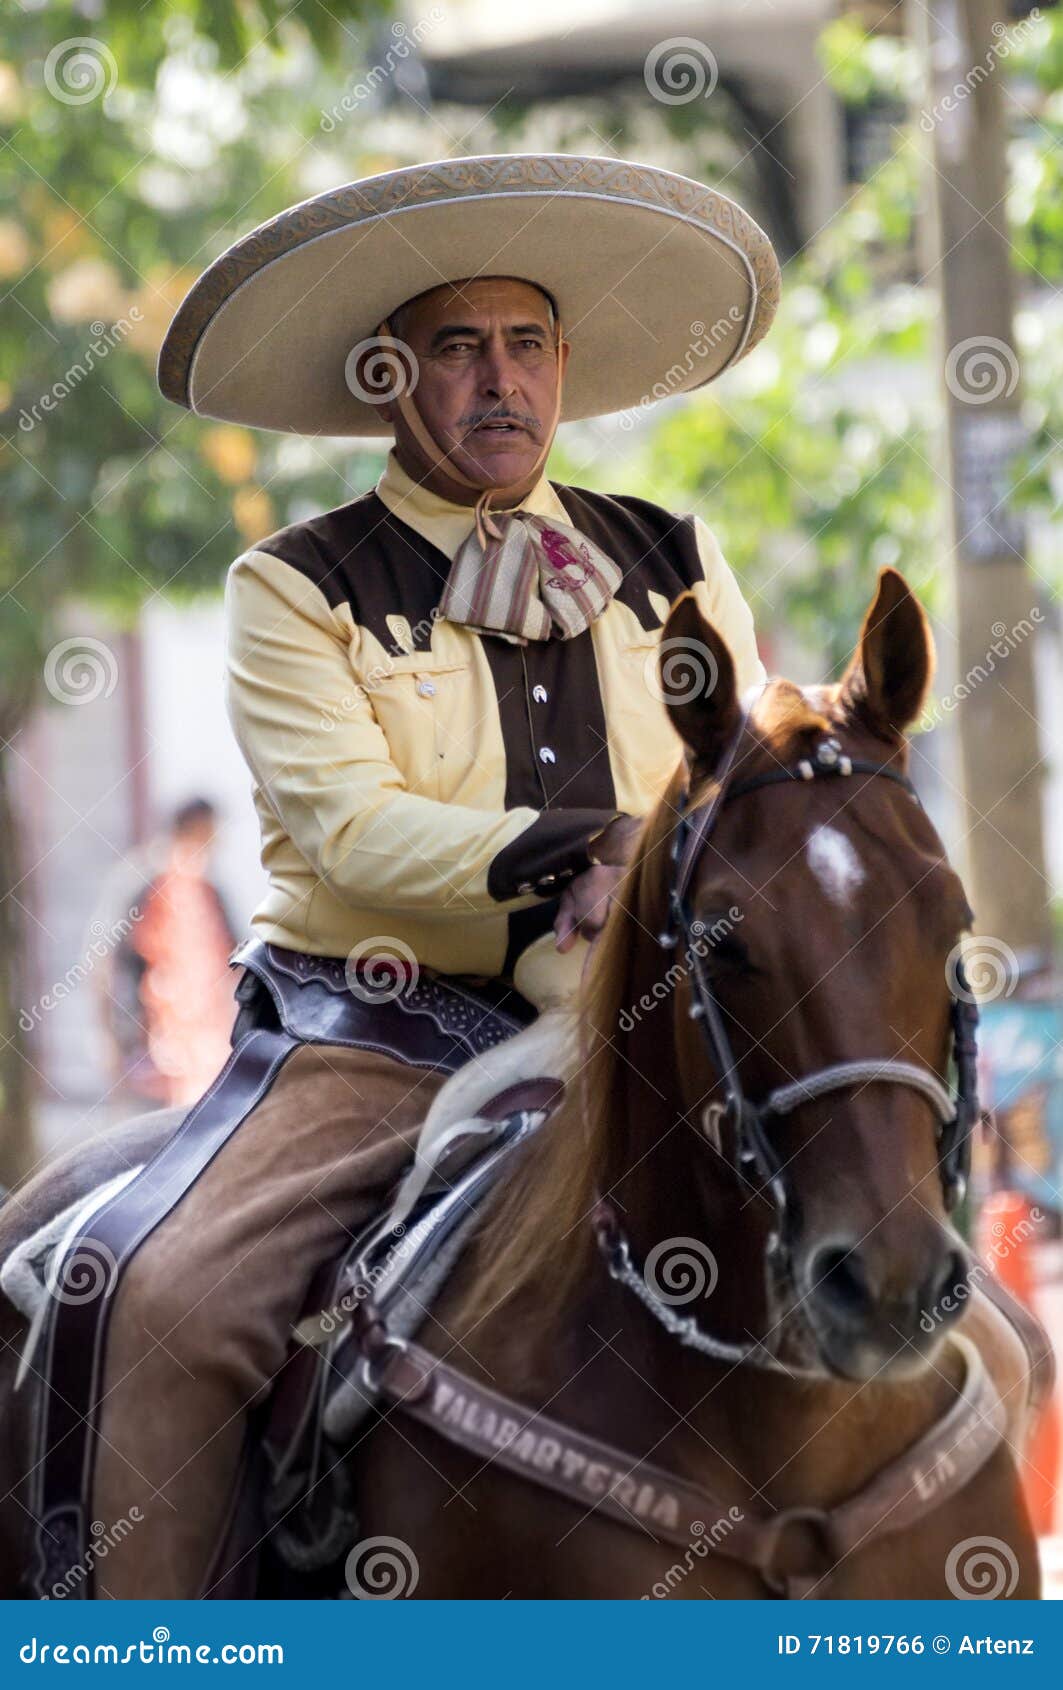 墨西哥牛仔 图库摄影片. 图片 包括有 服装, 马背, 牛仔, 体育运动, 穿戴, 传统, 竞争, 齿轮 - 115803752